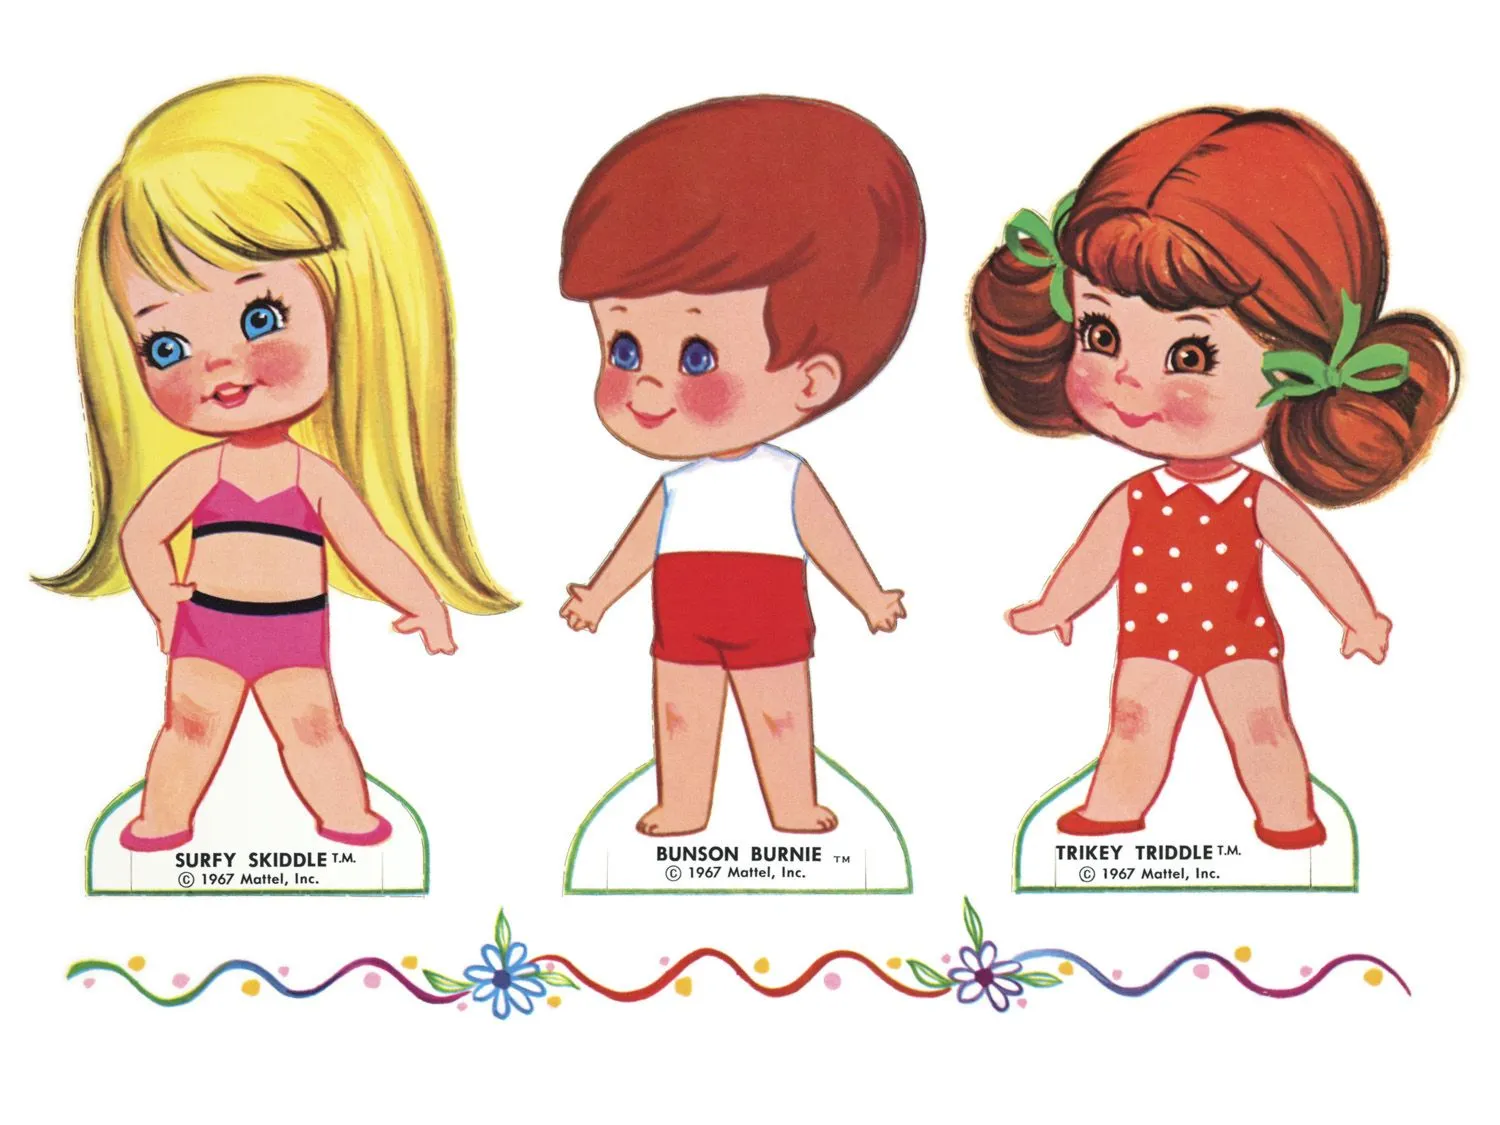 dibujos infantiles de muñecas - Linux Images - 500x468 - 93KB ...